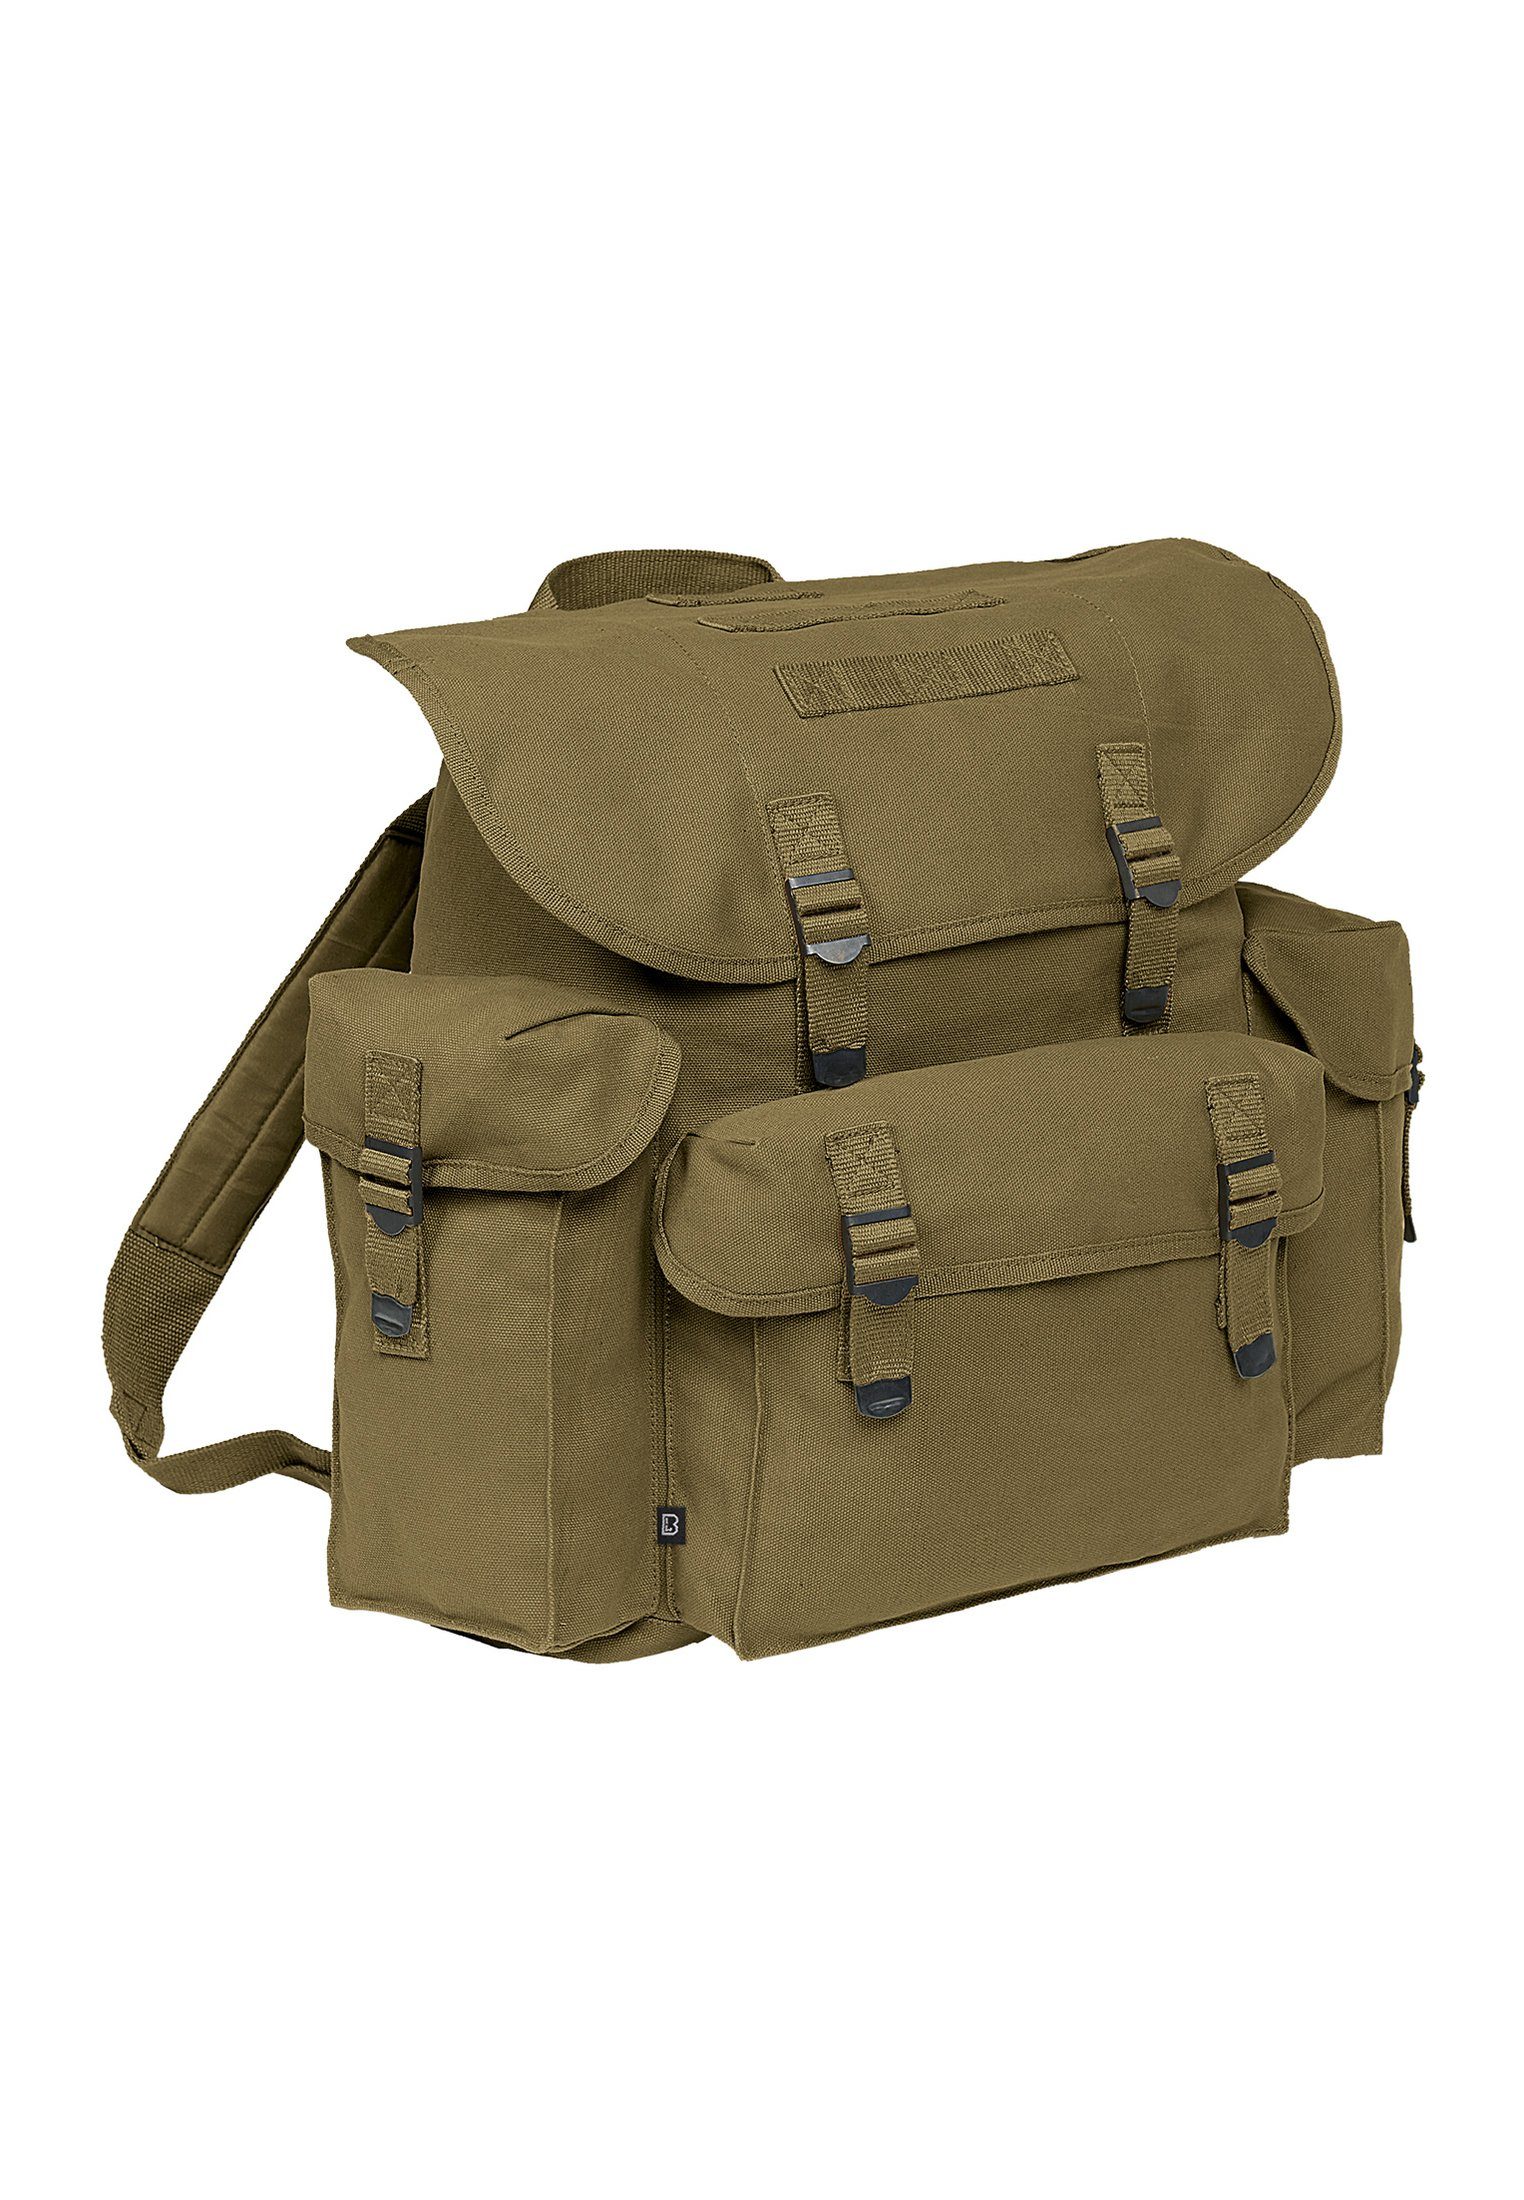 Brandit Rucksack Bag Accessoires olive Military Pocket